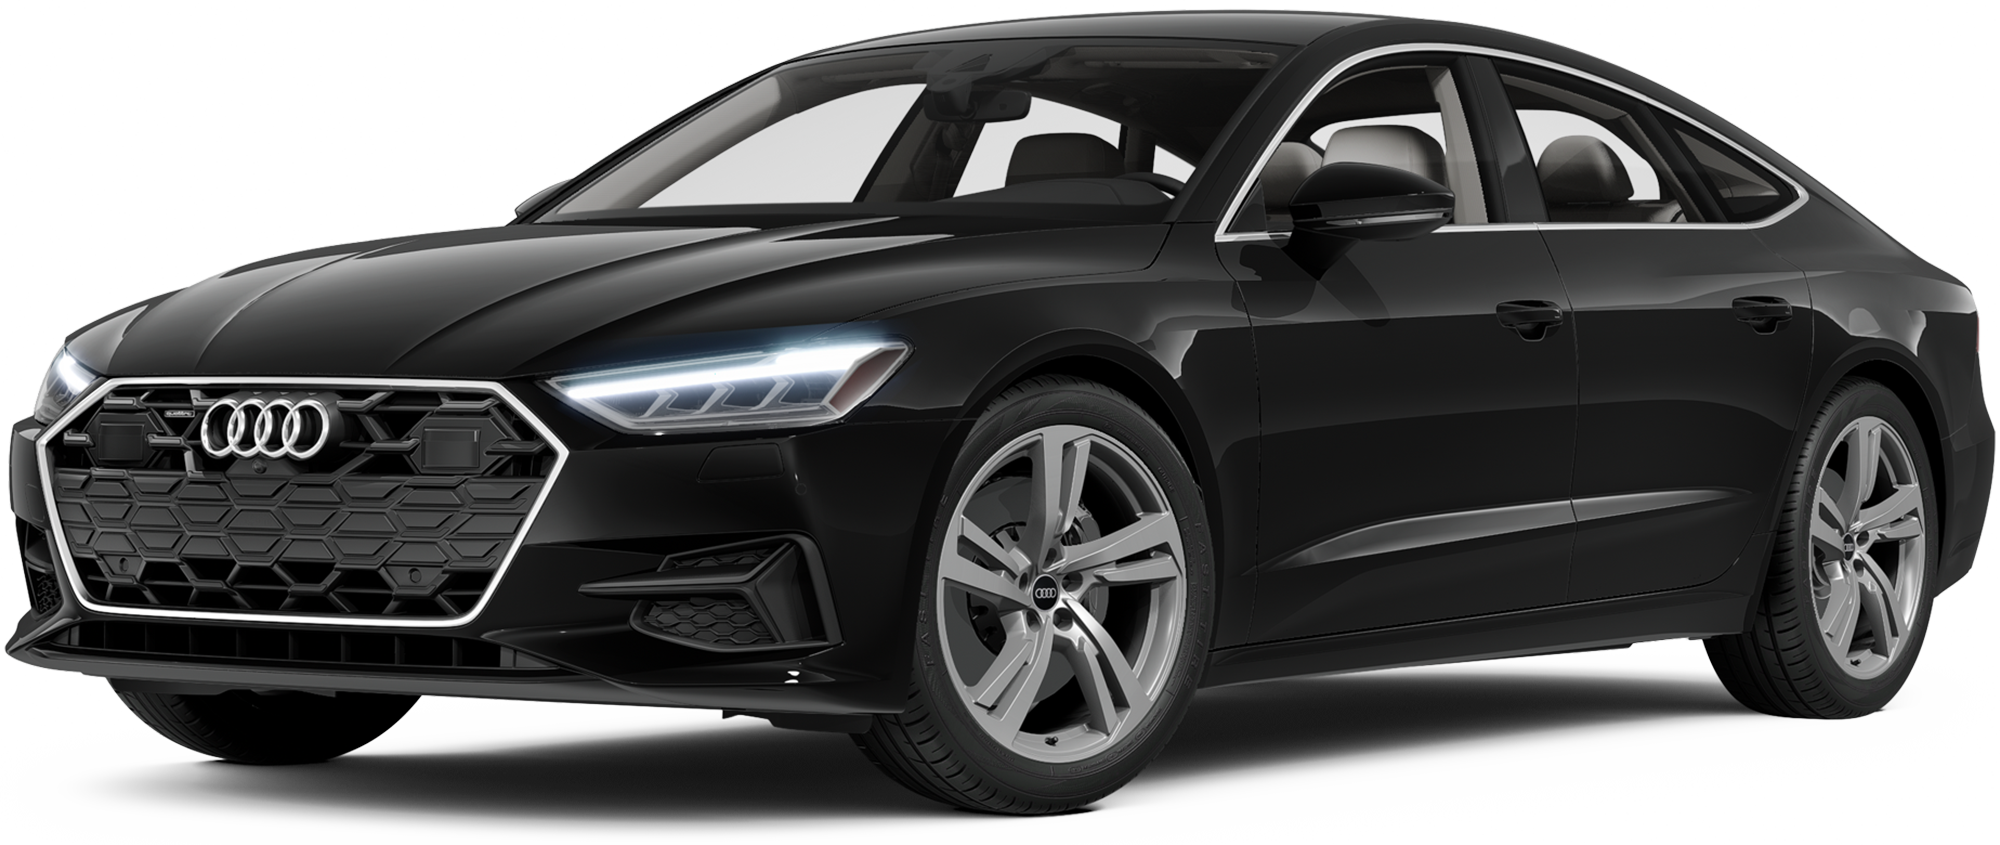 https://images.dealer.com/ddc/vehicles/2024/Audi/A7/Hatchback/perspective/front-left/2024_24.png